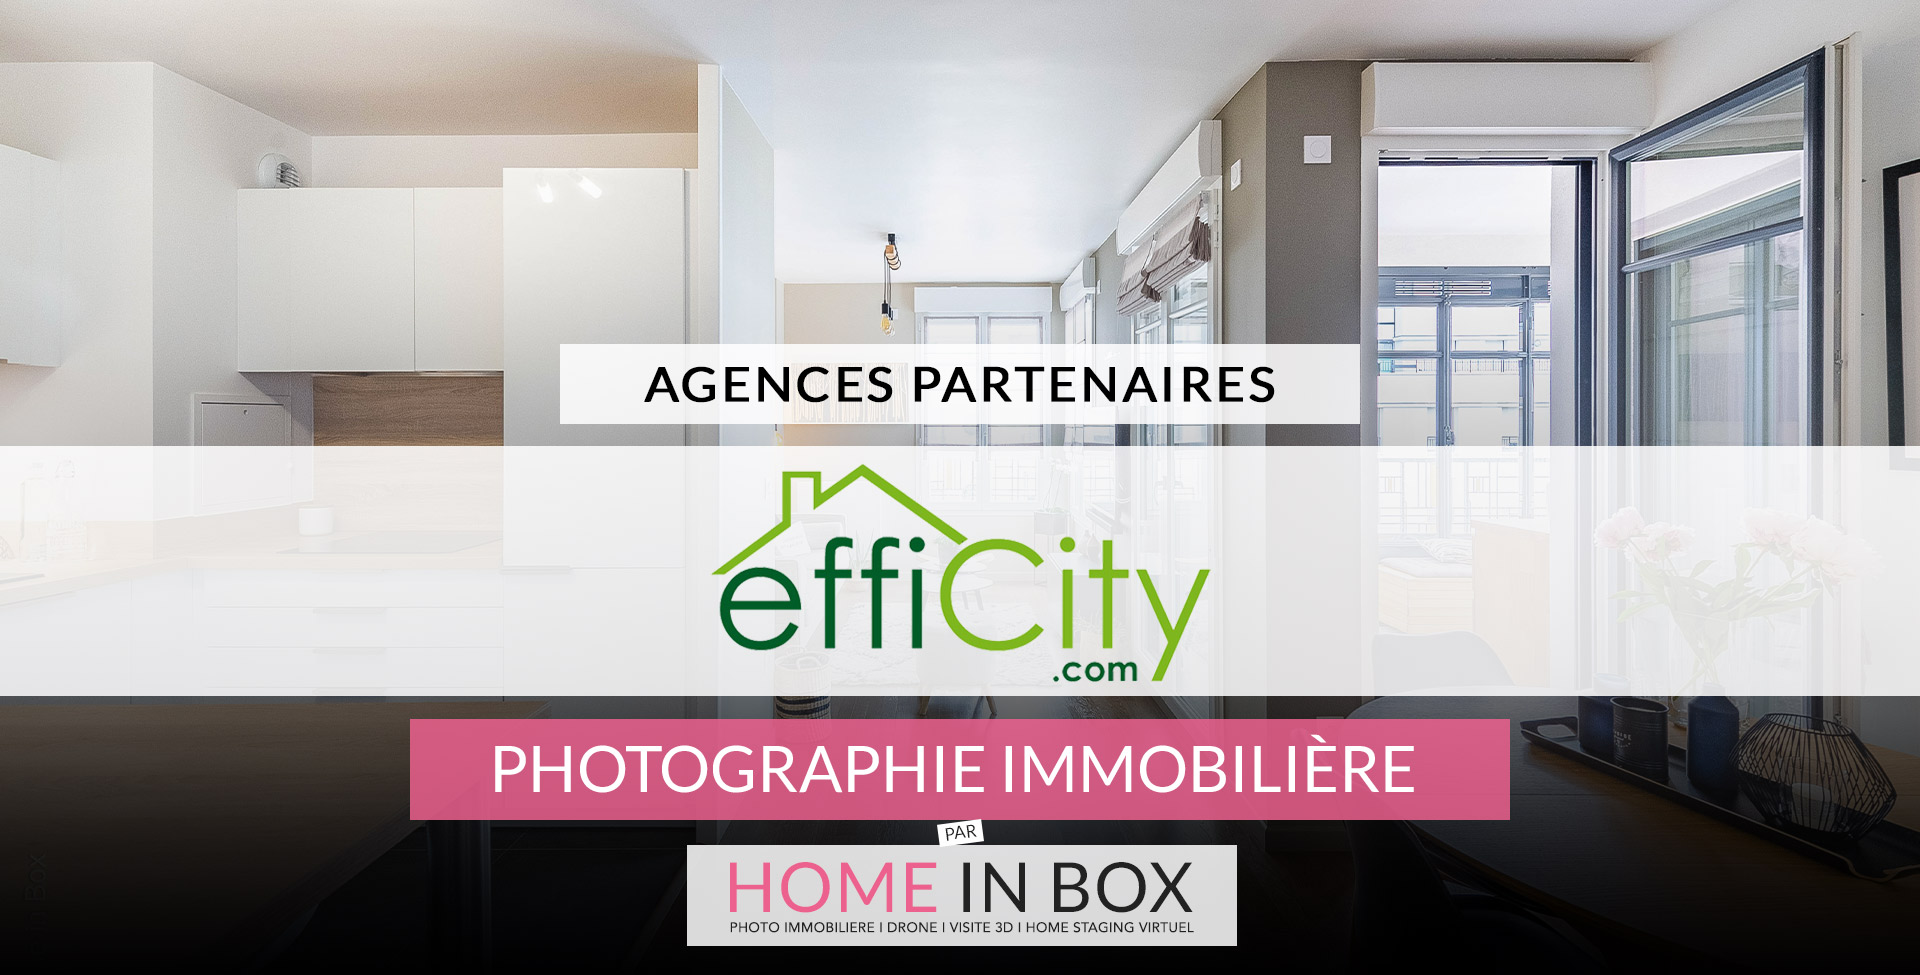 Agences Partenaires Réseau Efficity | Home in Box